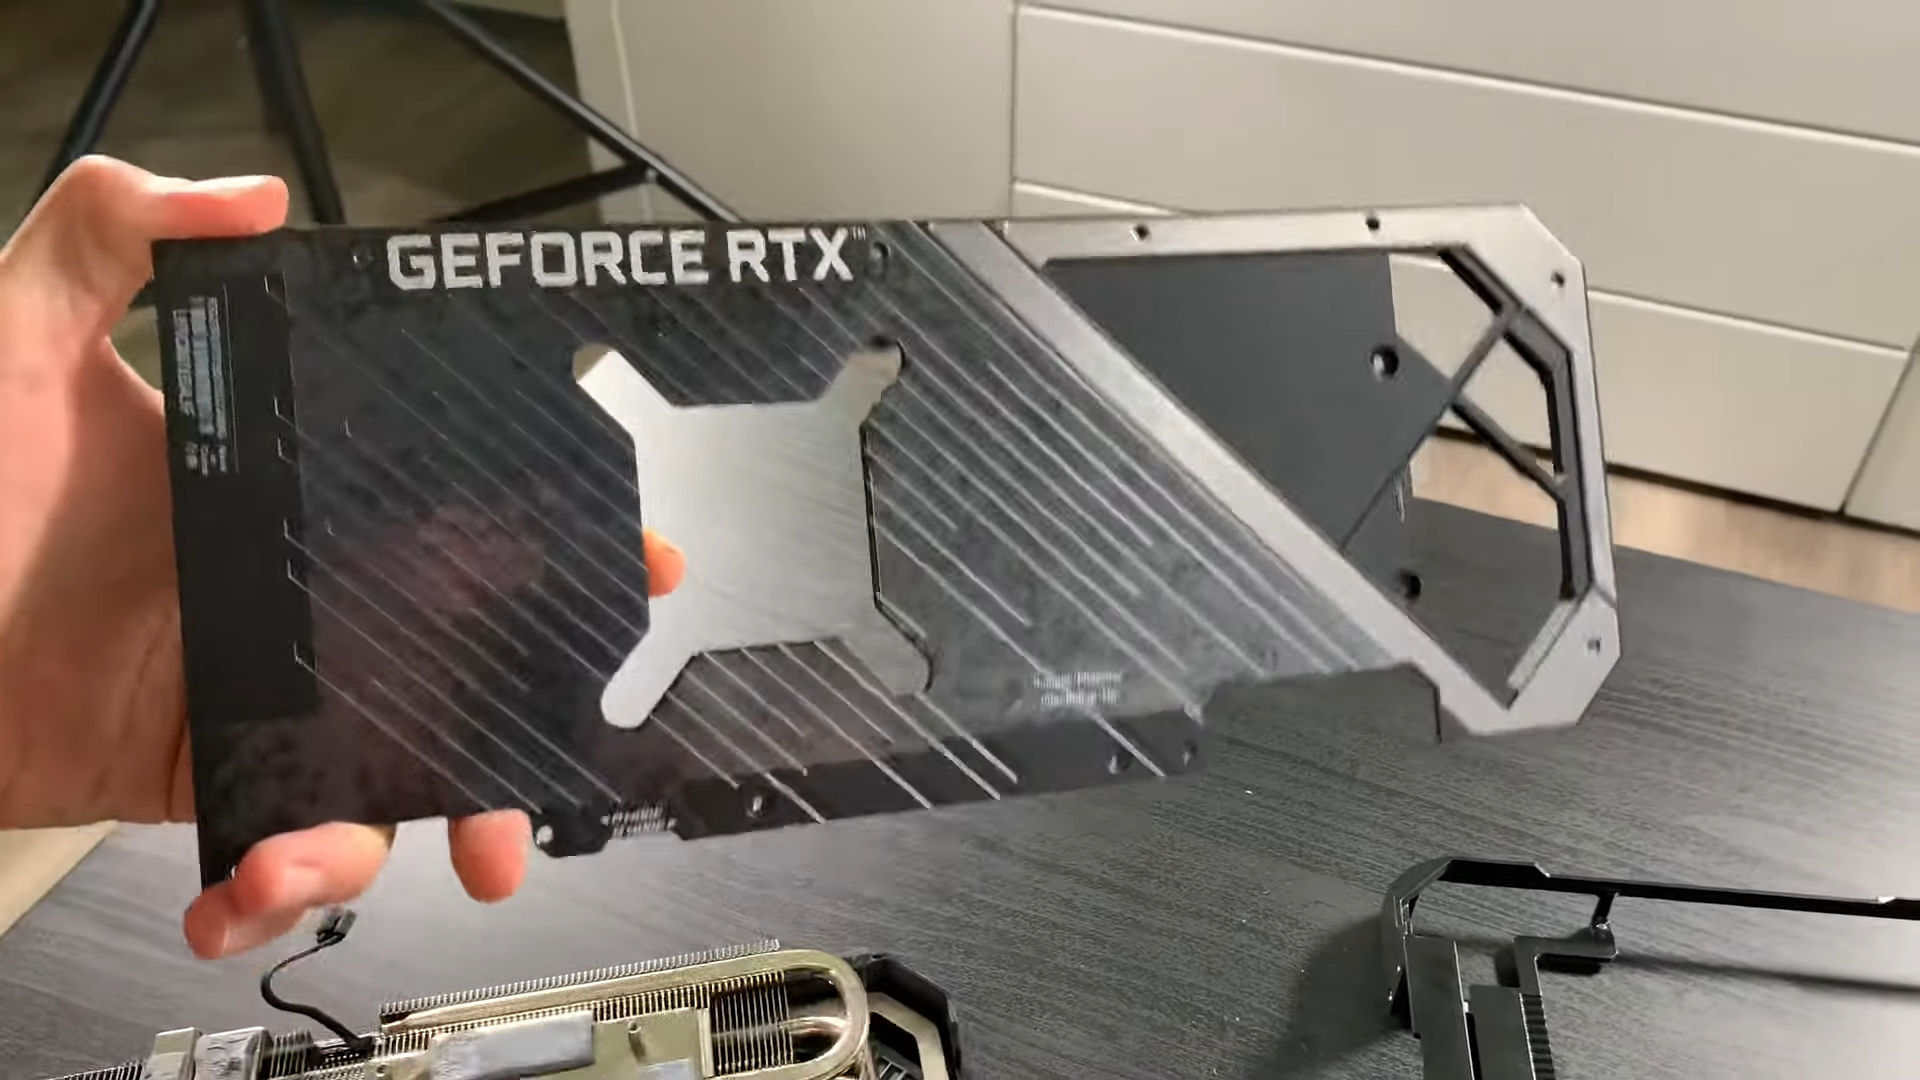 ASUS GeForce RTX 3080 ROG STRIX taken apart - VideoCardz.com